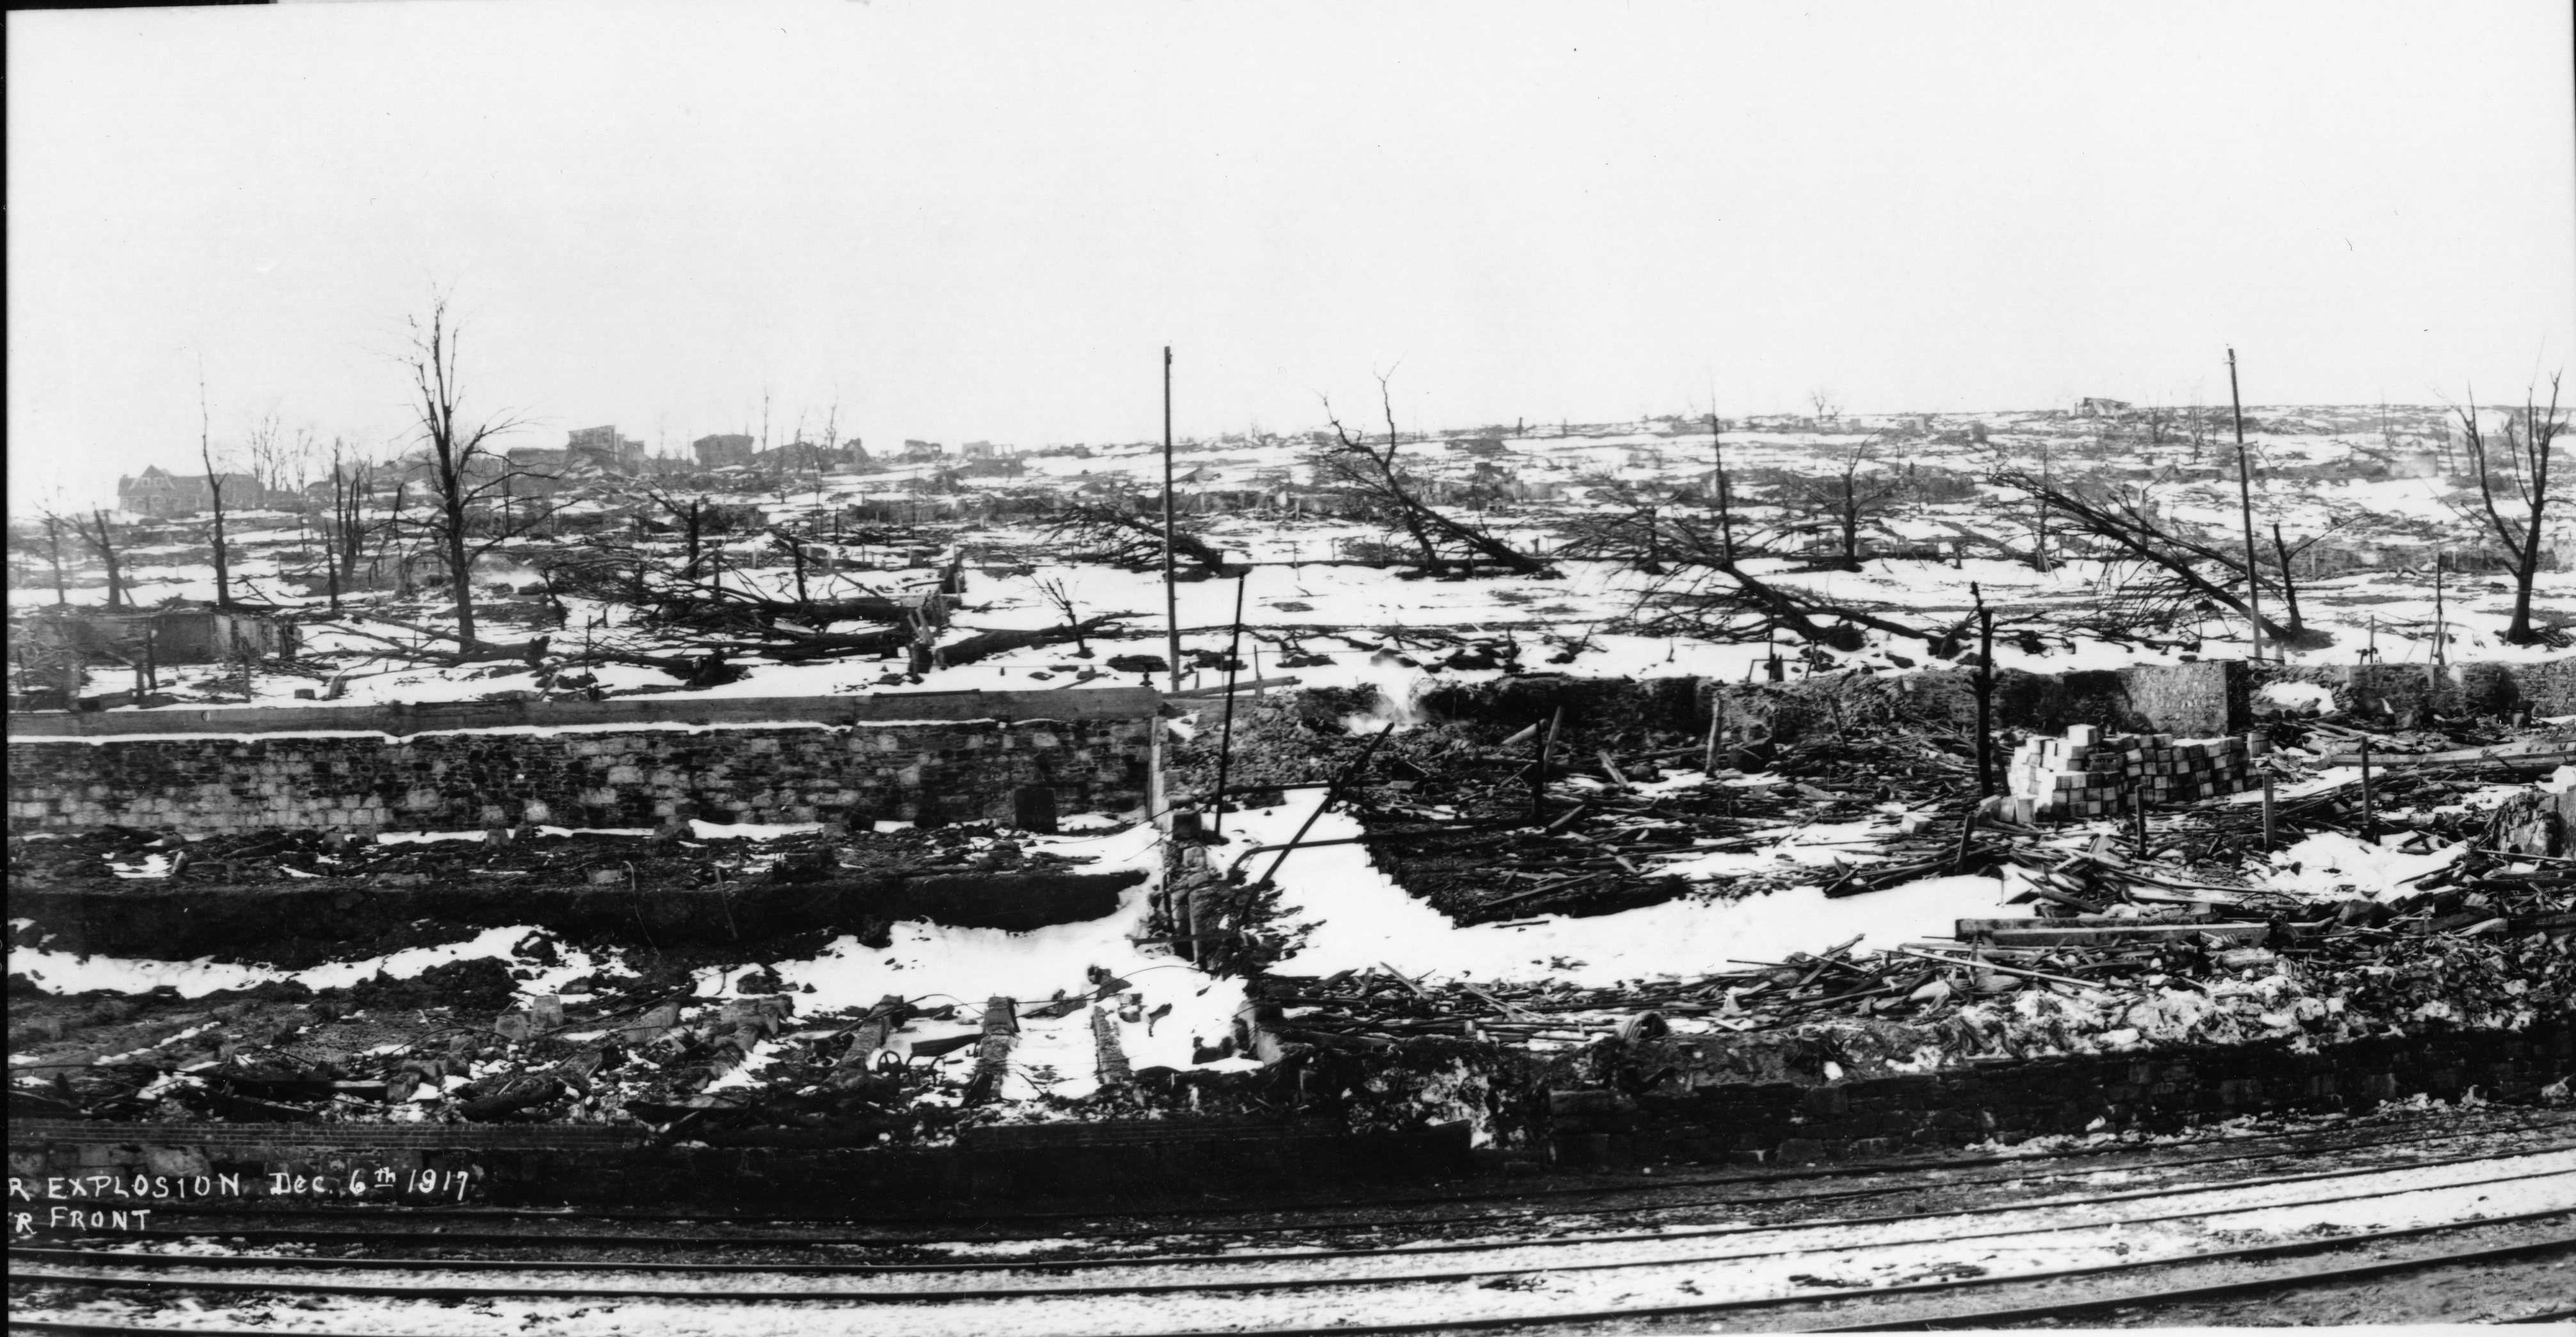 Photographie en noir et blanc – Une voie ferrée au premier plan; quelques structures visibles au loin. On aperçoit la fondation et les décombres d’un bâtiment au centre de la photo, de même que des arbres calcinés et de la neige au sol.